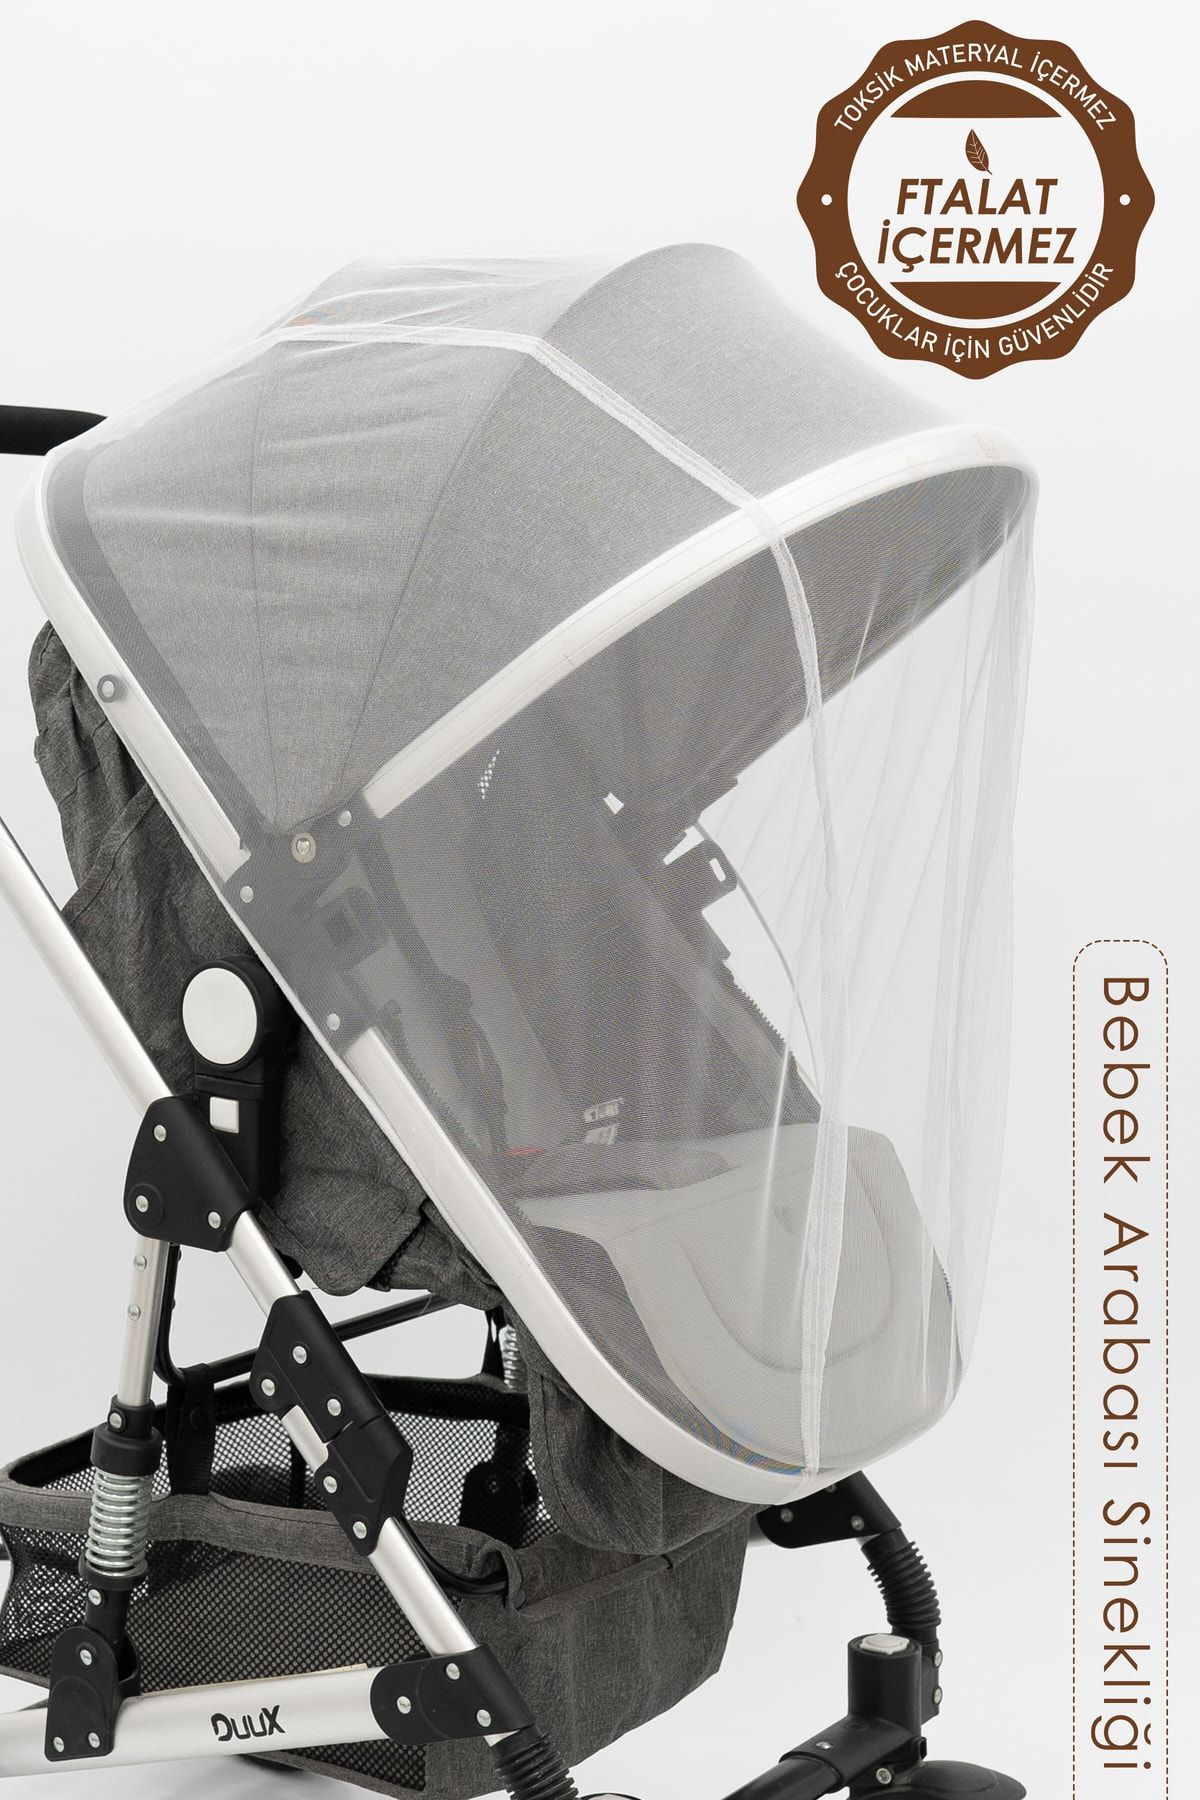 mordesign Bebek Arabası Sinekliği/cibinliği, Sahra Serisi, Beyaz (tüm Bebek Arabaları Ile Uyumludur) ZG963